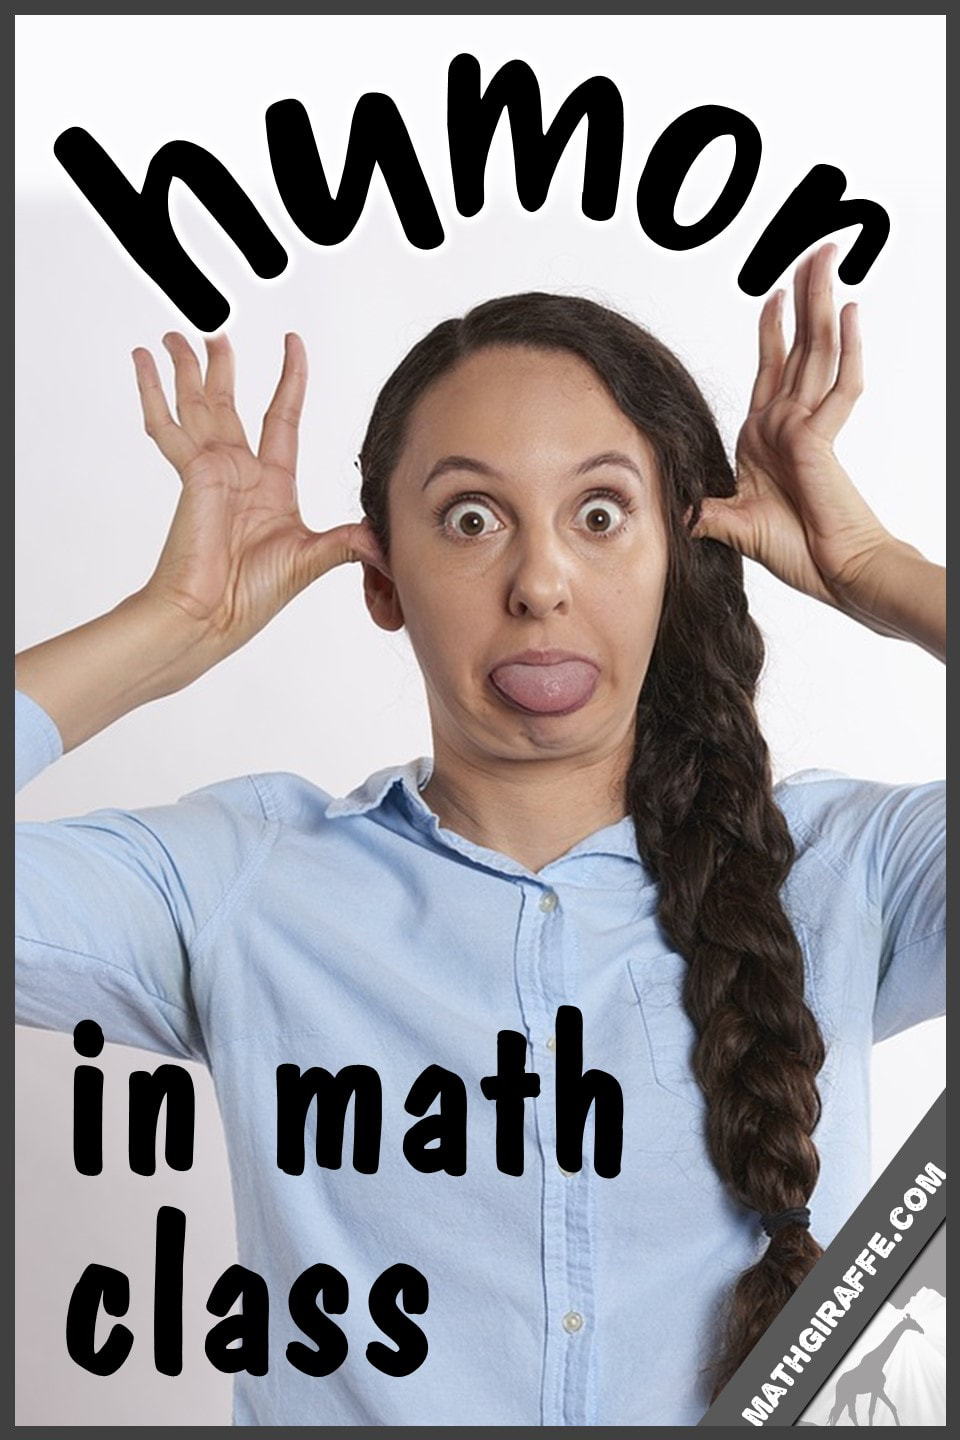 algebra humor